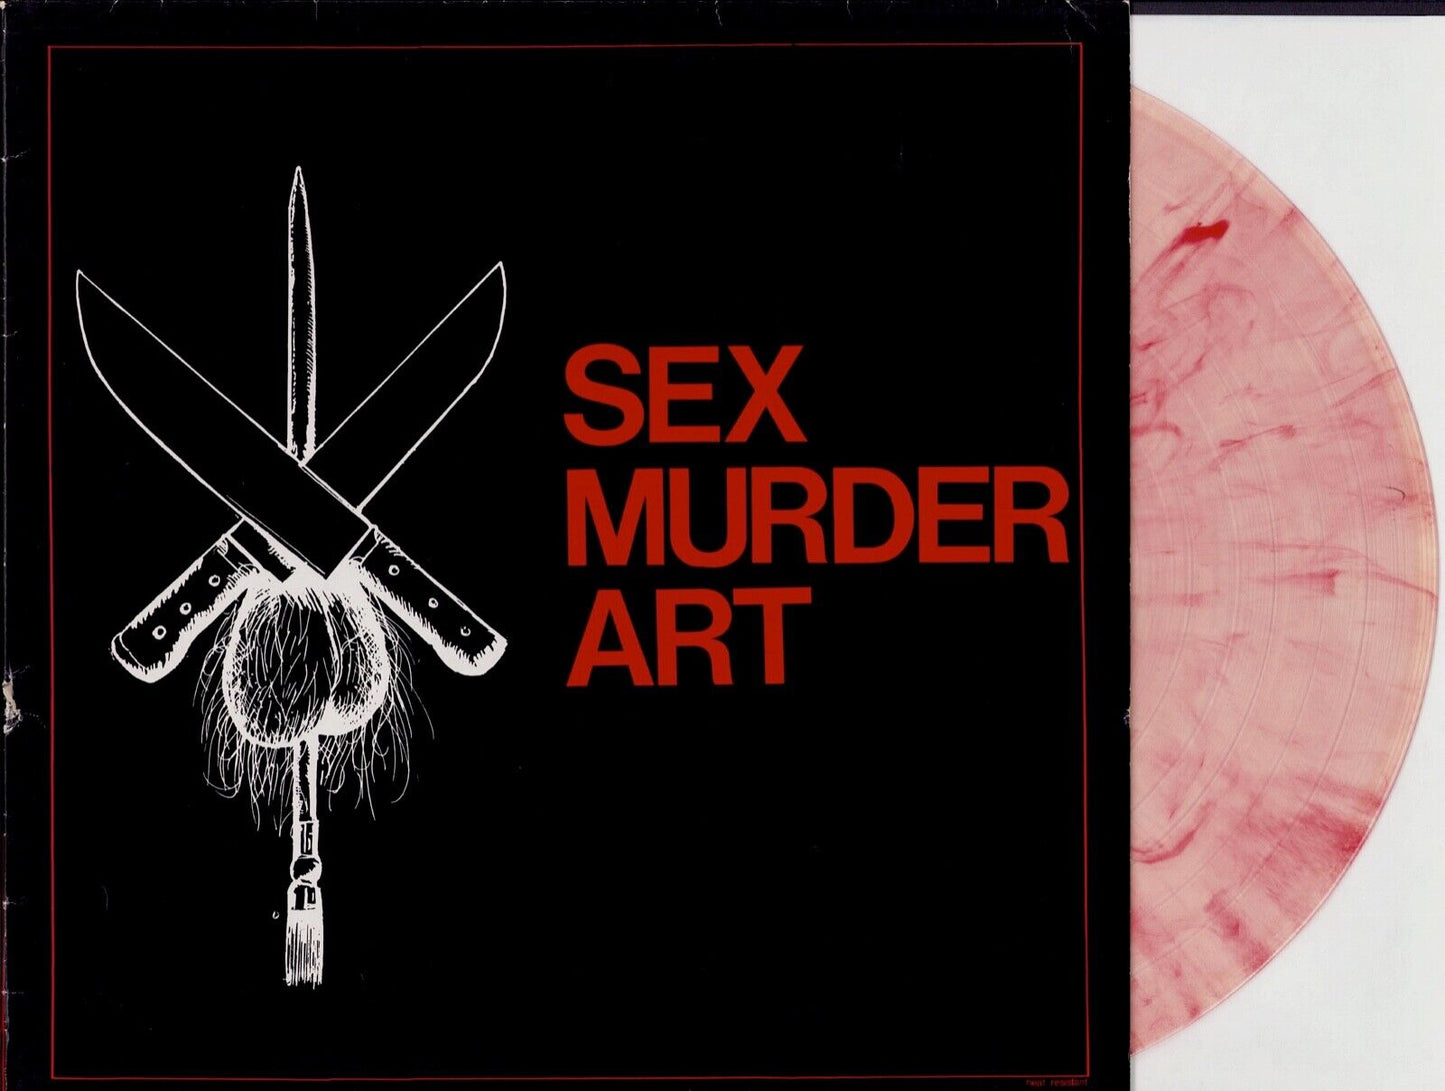 Sex Murder Art - Sex Murder Art Pink Transparent Vinyl LP